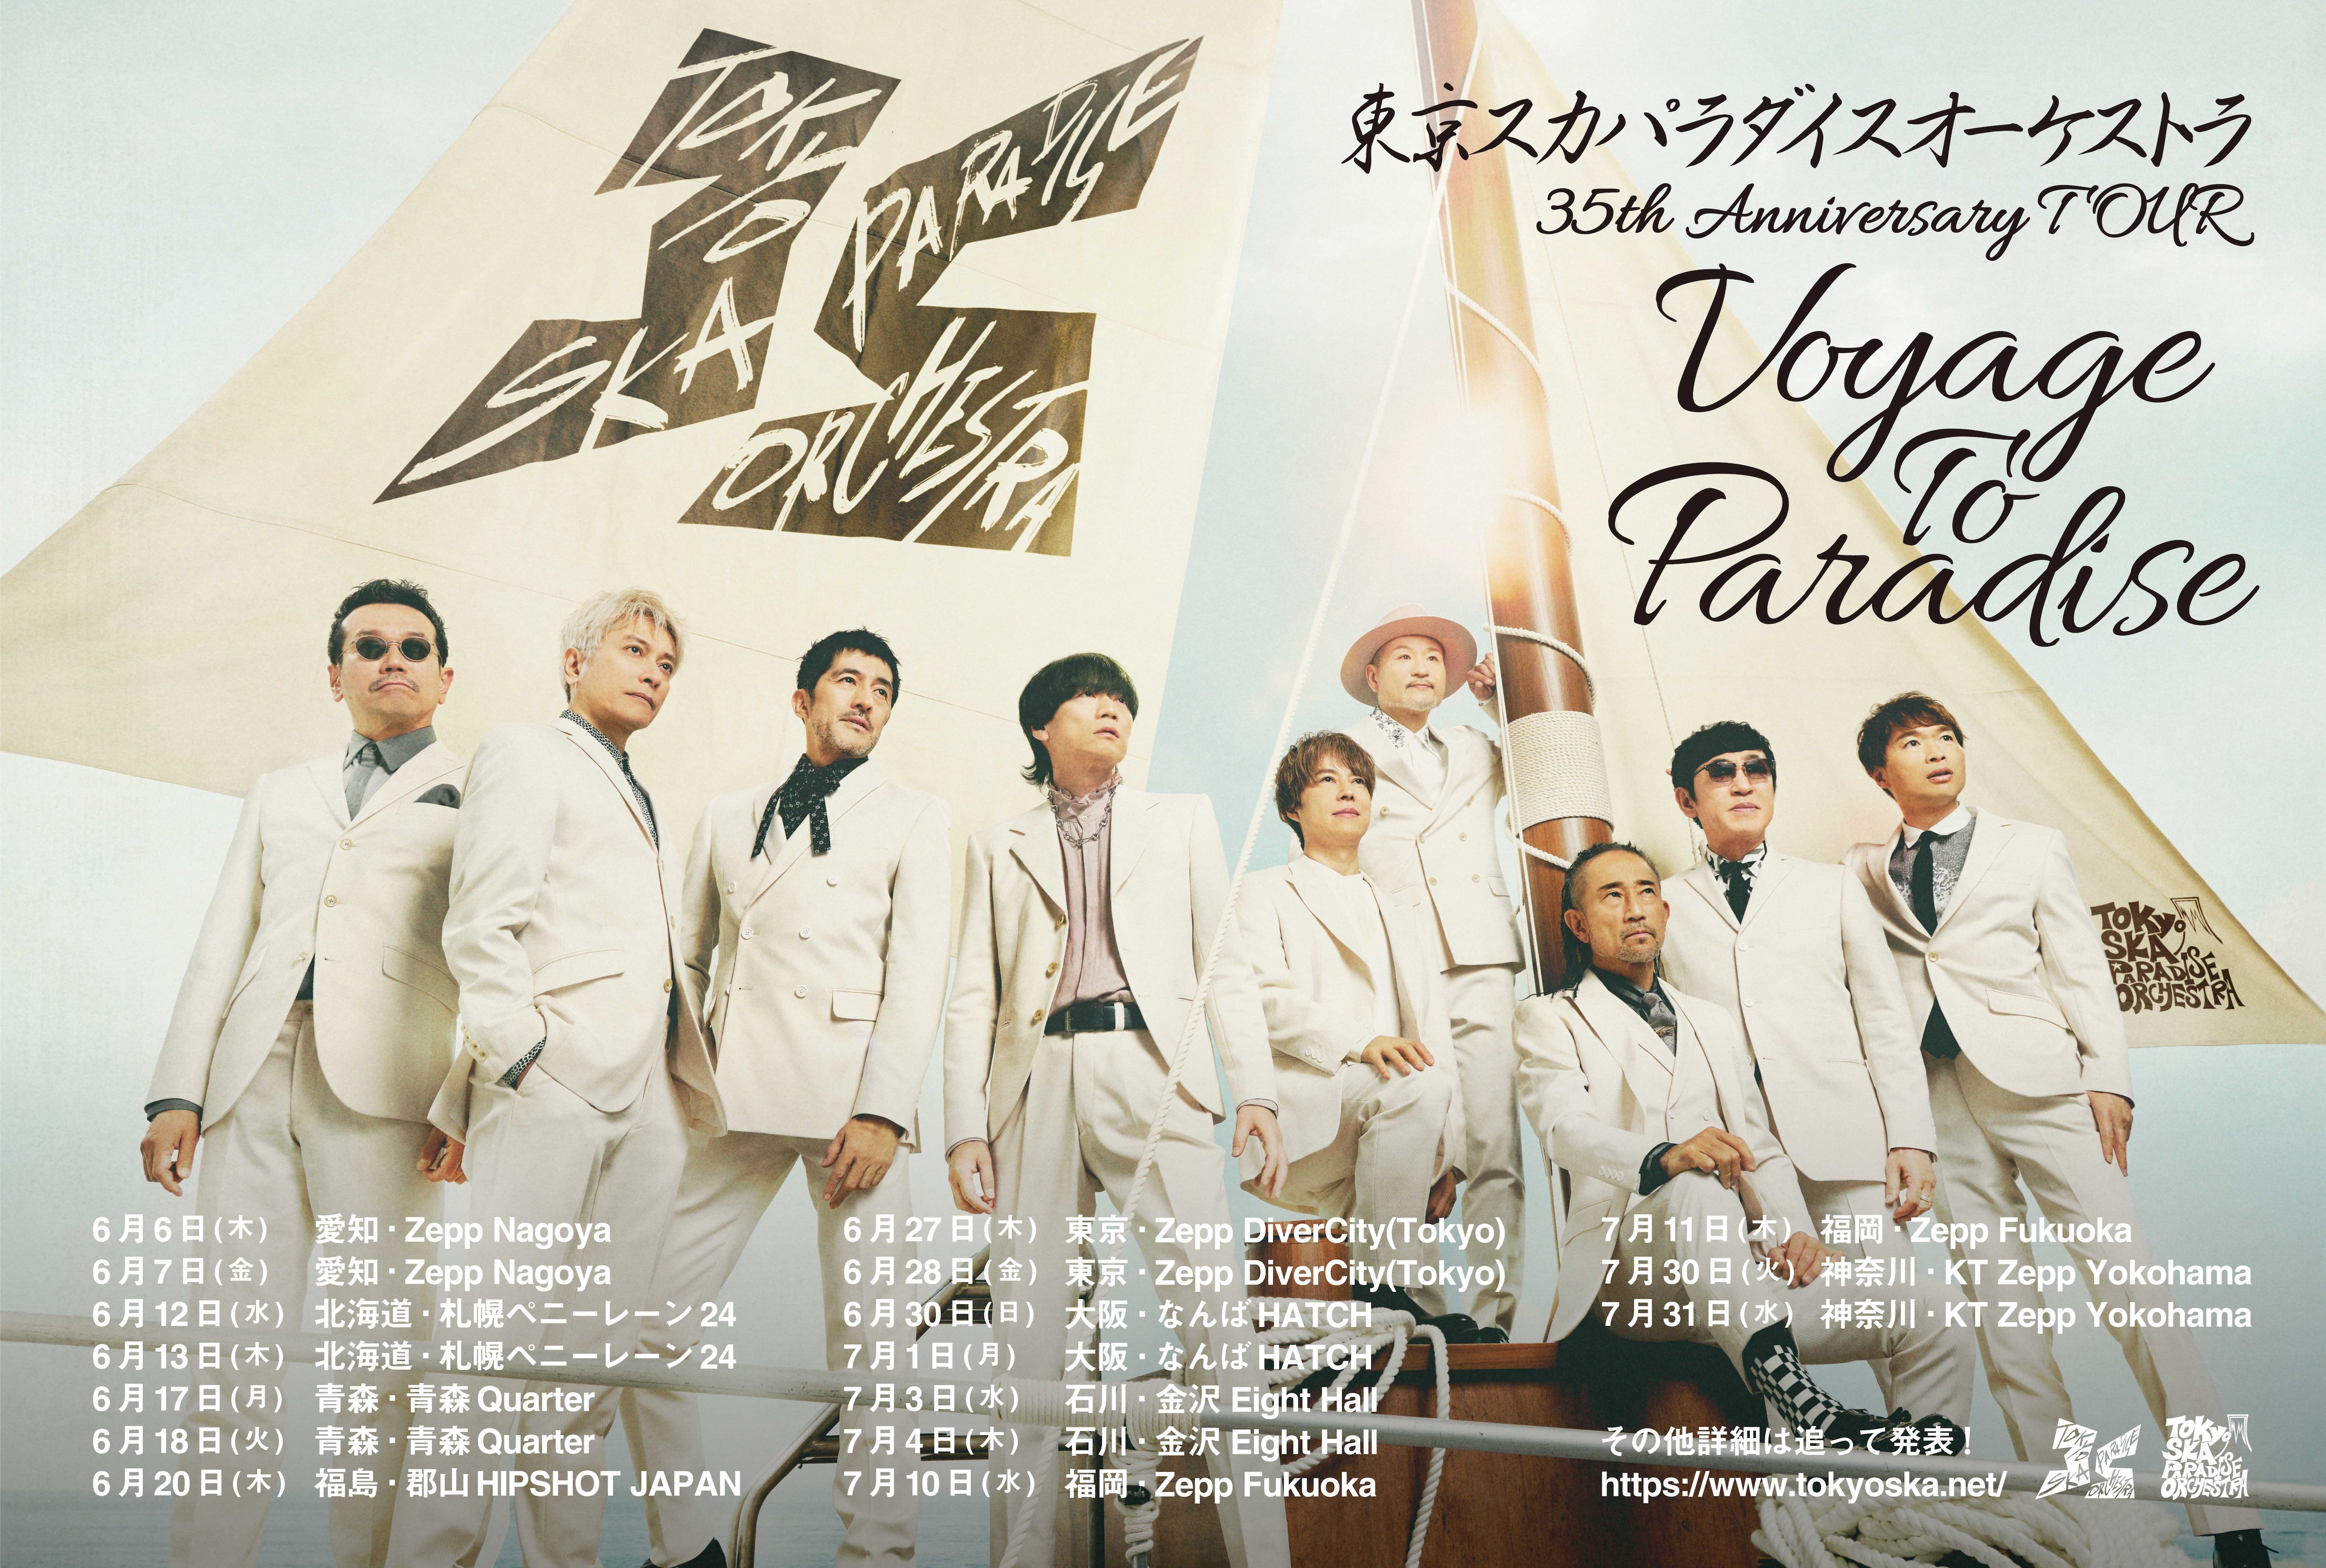 東京スカパラダイスオーケストラ 35th Anniversary TOUR「Voyage To 